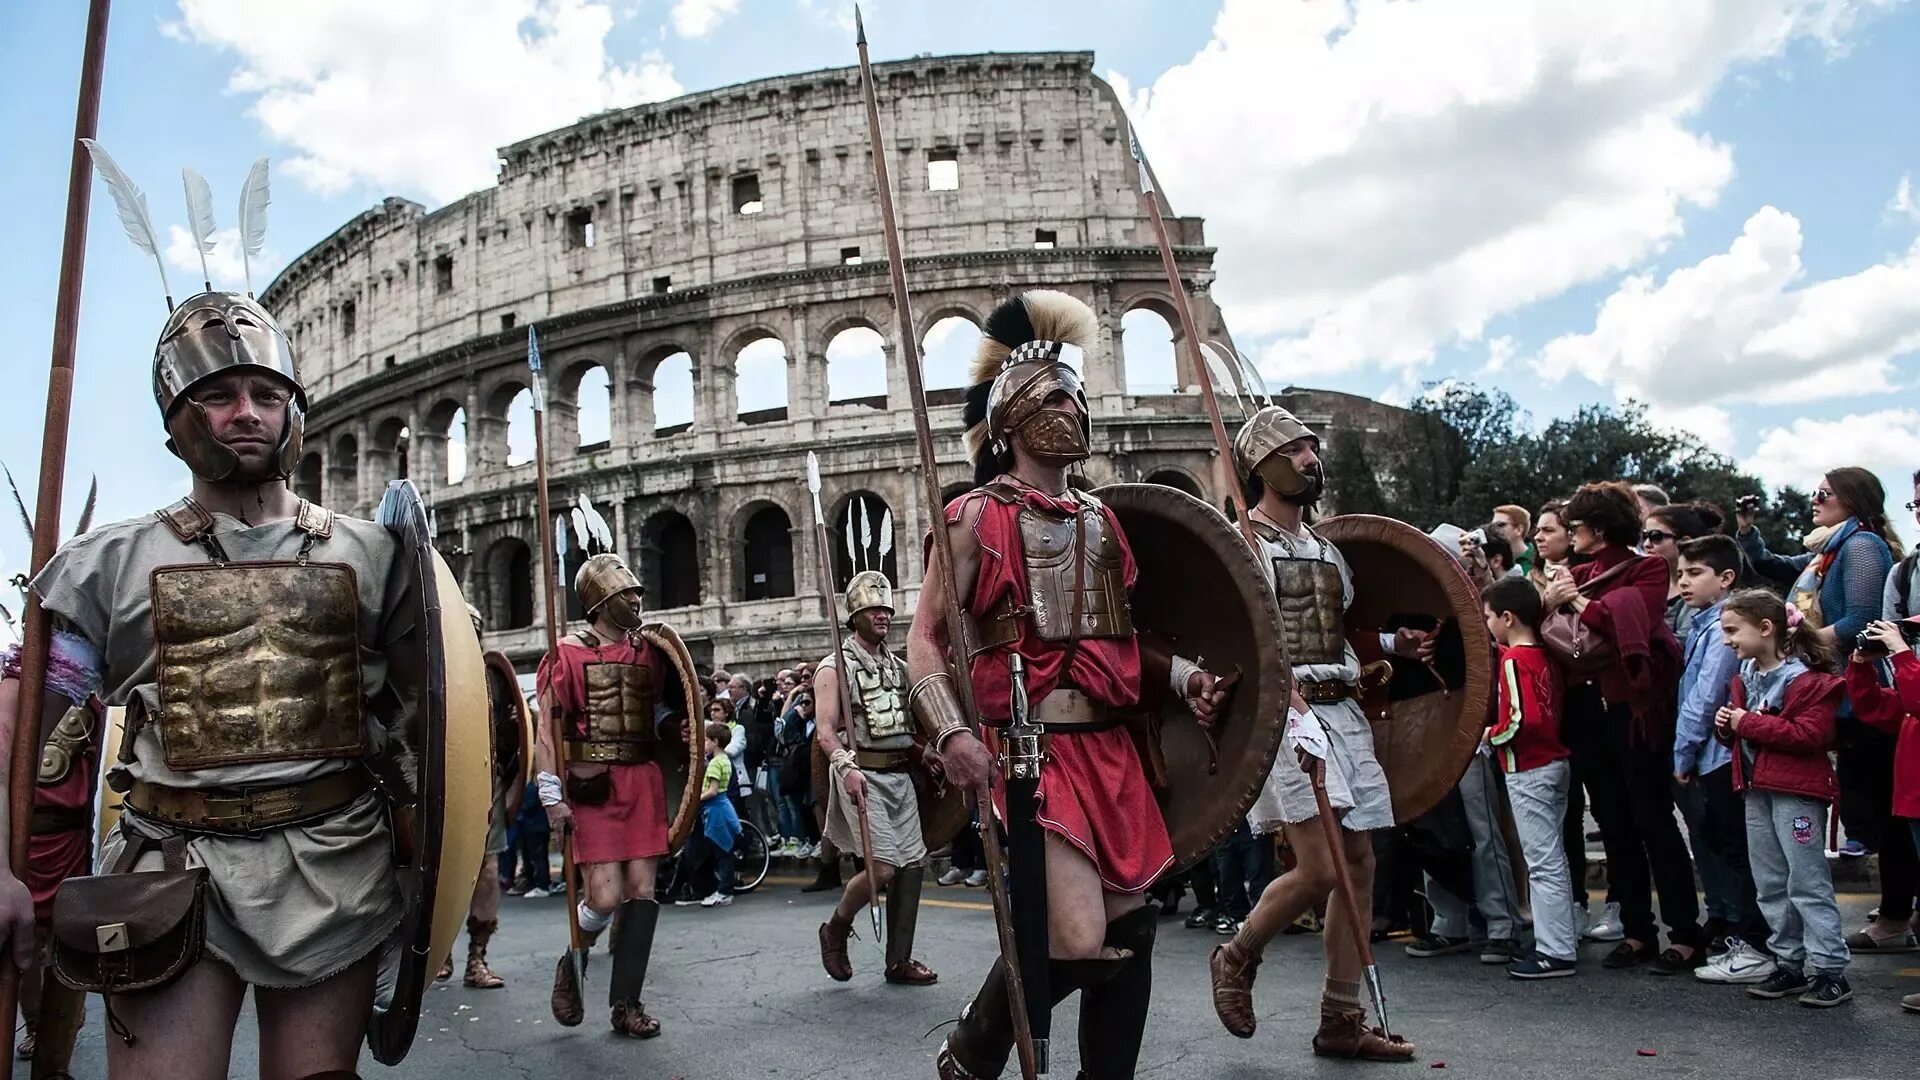 День основания Рима 21 апреля. День основания Рима Италия. Италия культура и традиции. Современные римляне.